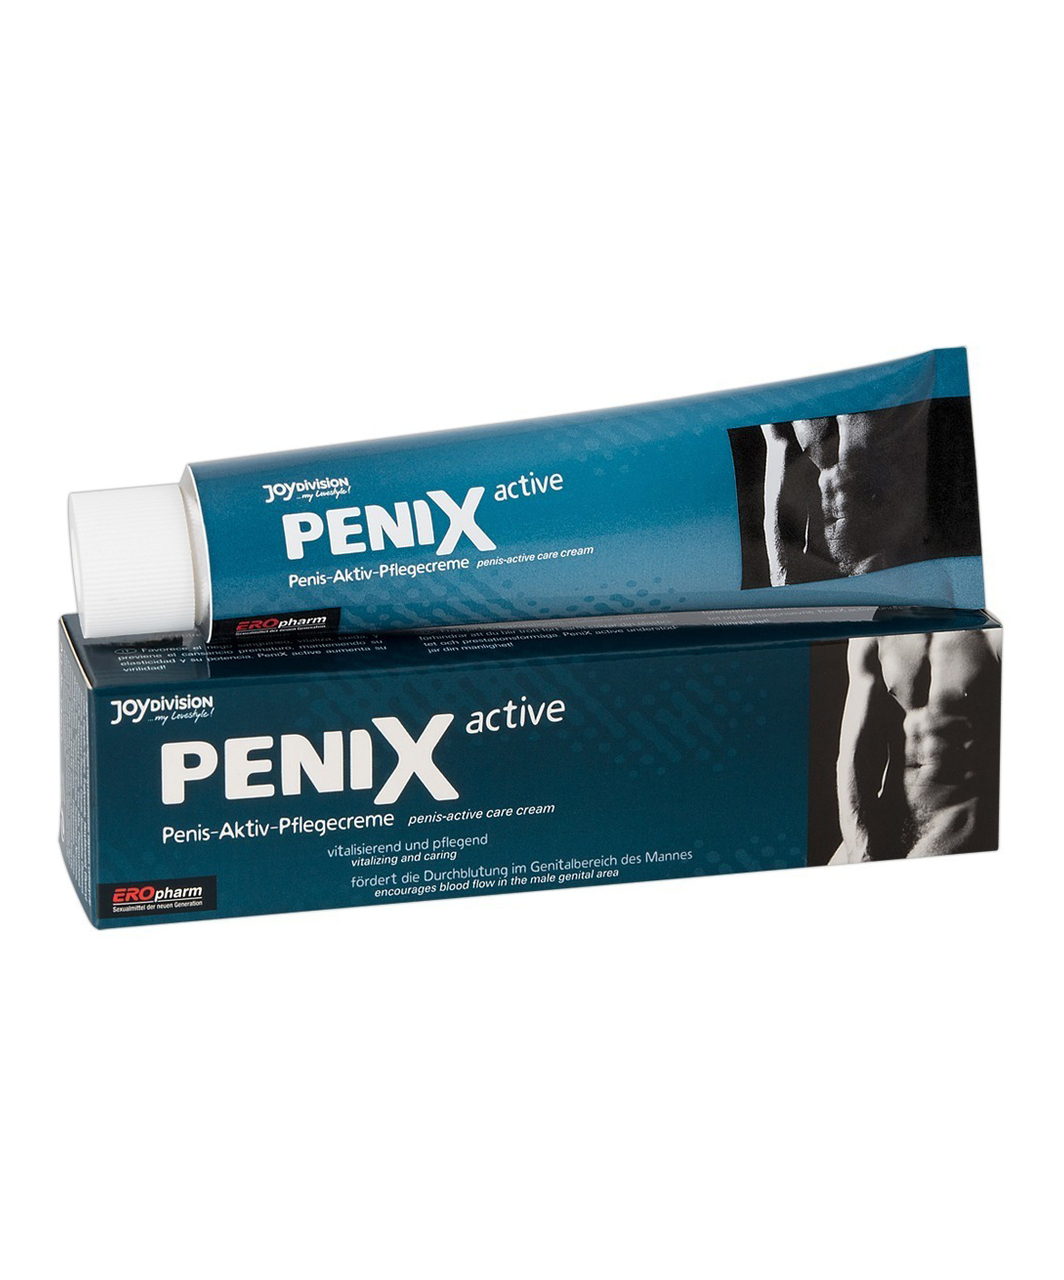 JoyDivision Penix active care cream (75 ml)